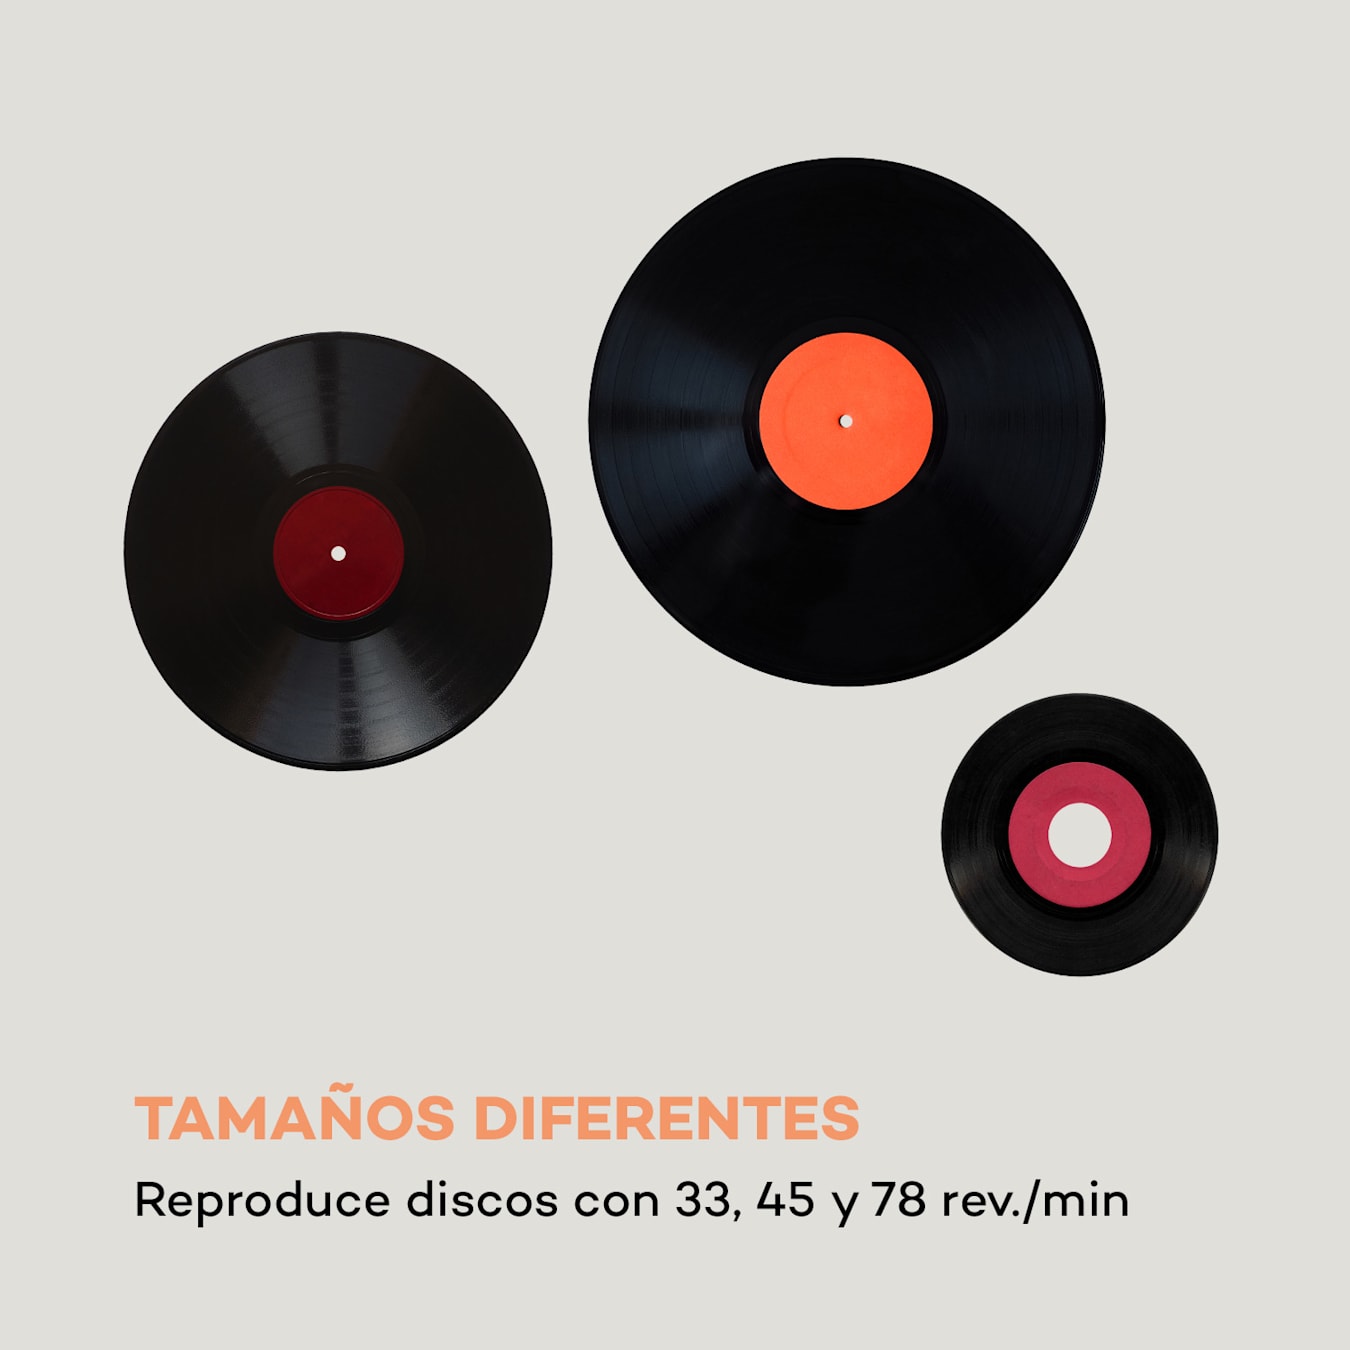 Equipo de Música Hi Fi Tocadiscos 33/45/78 rpm, Radio FM